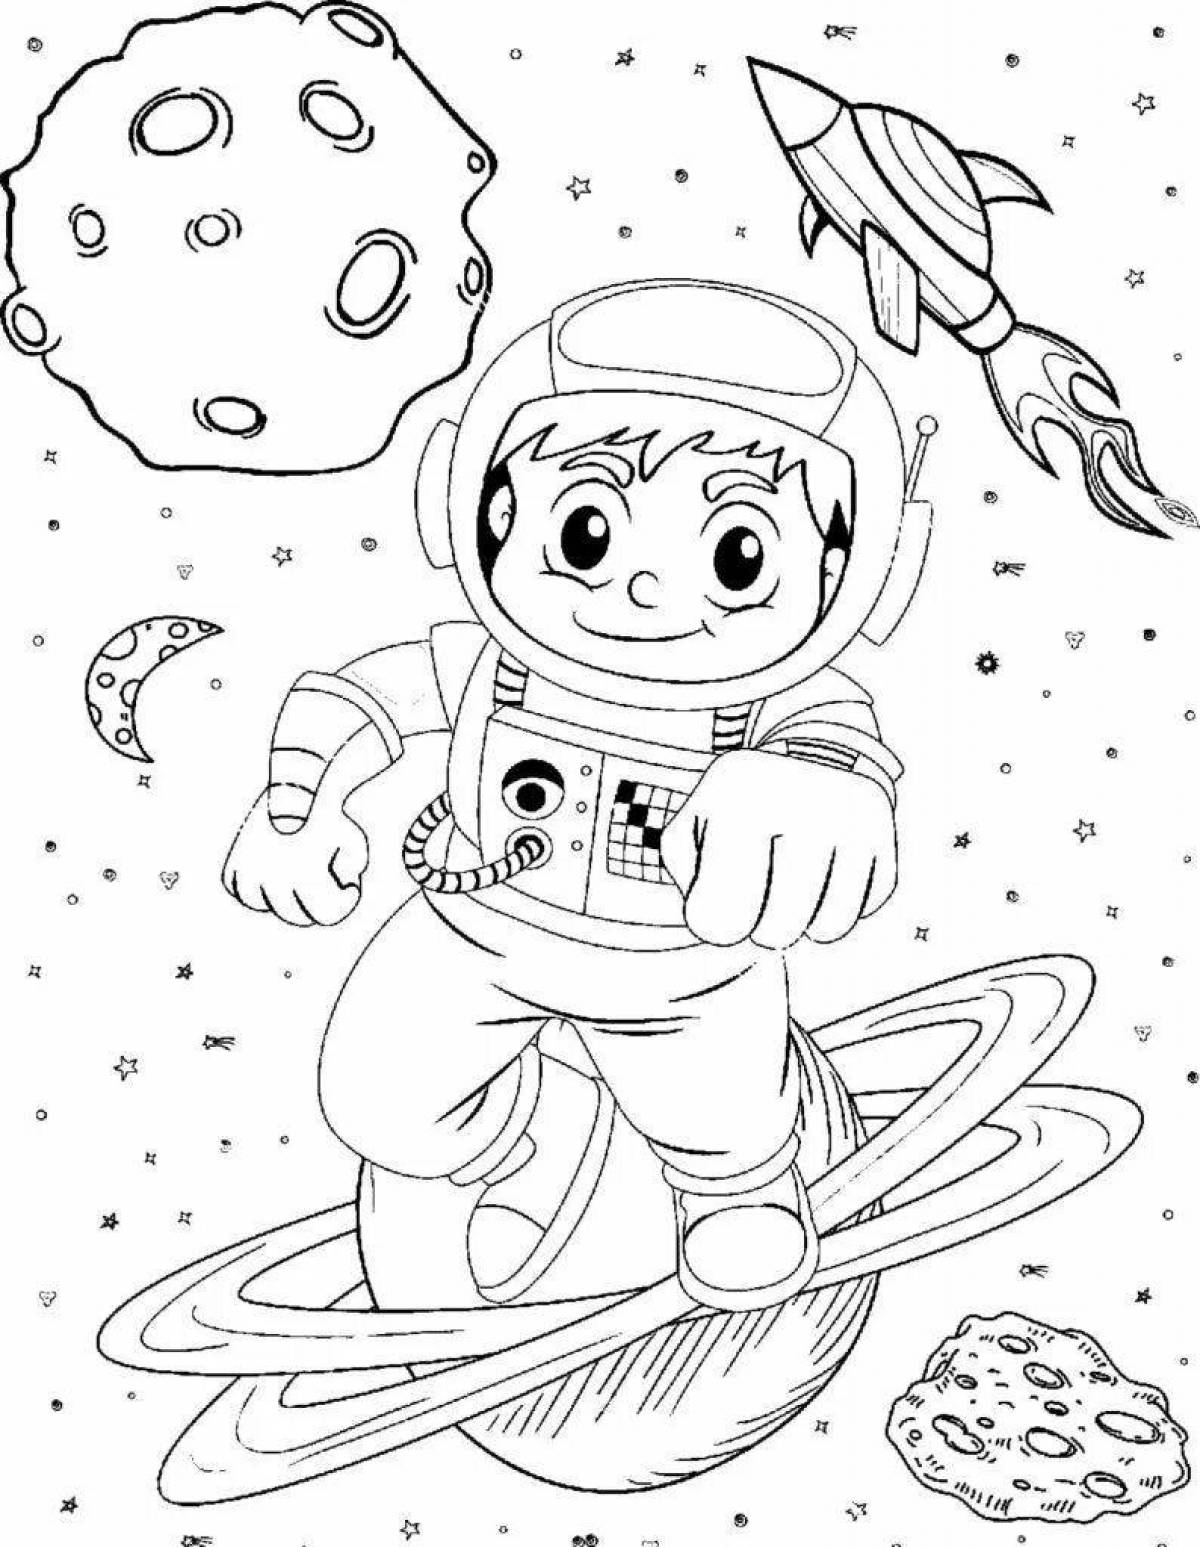 Coloring book excellent astronaut in space helmet